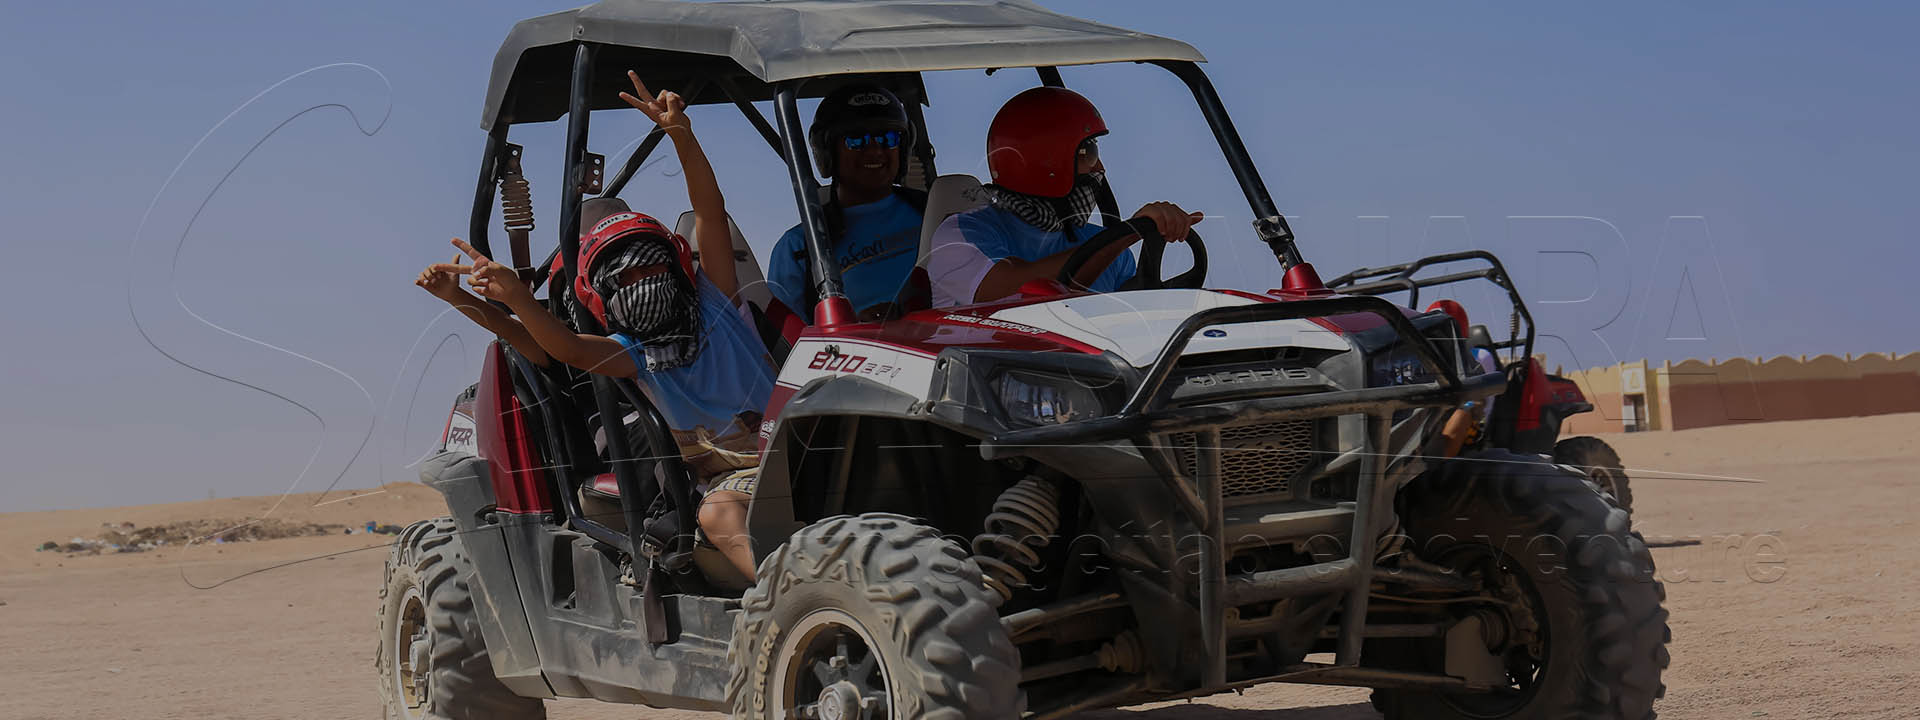 Tour in buggy di Sharm El Sheikh